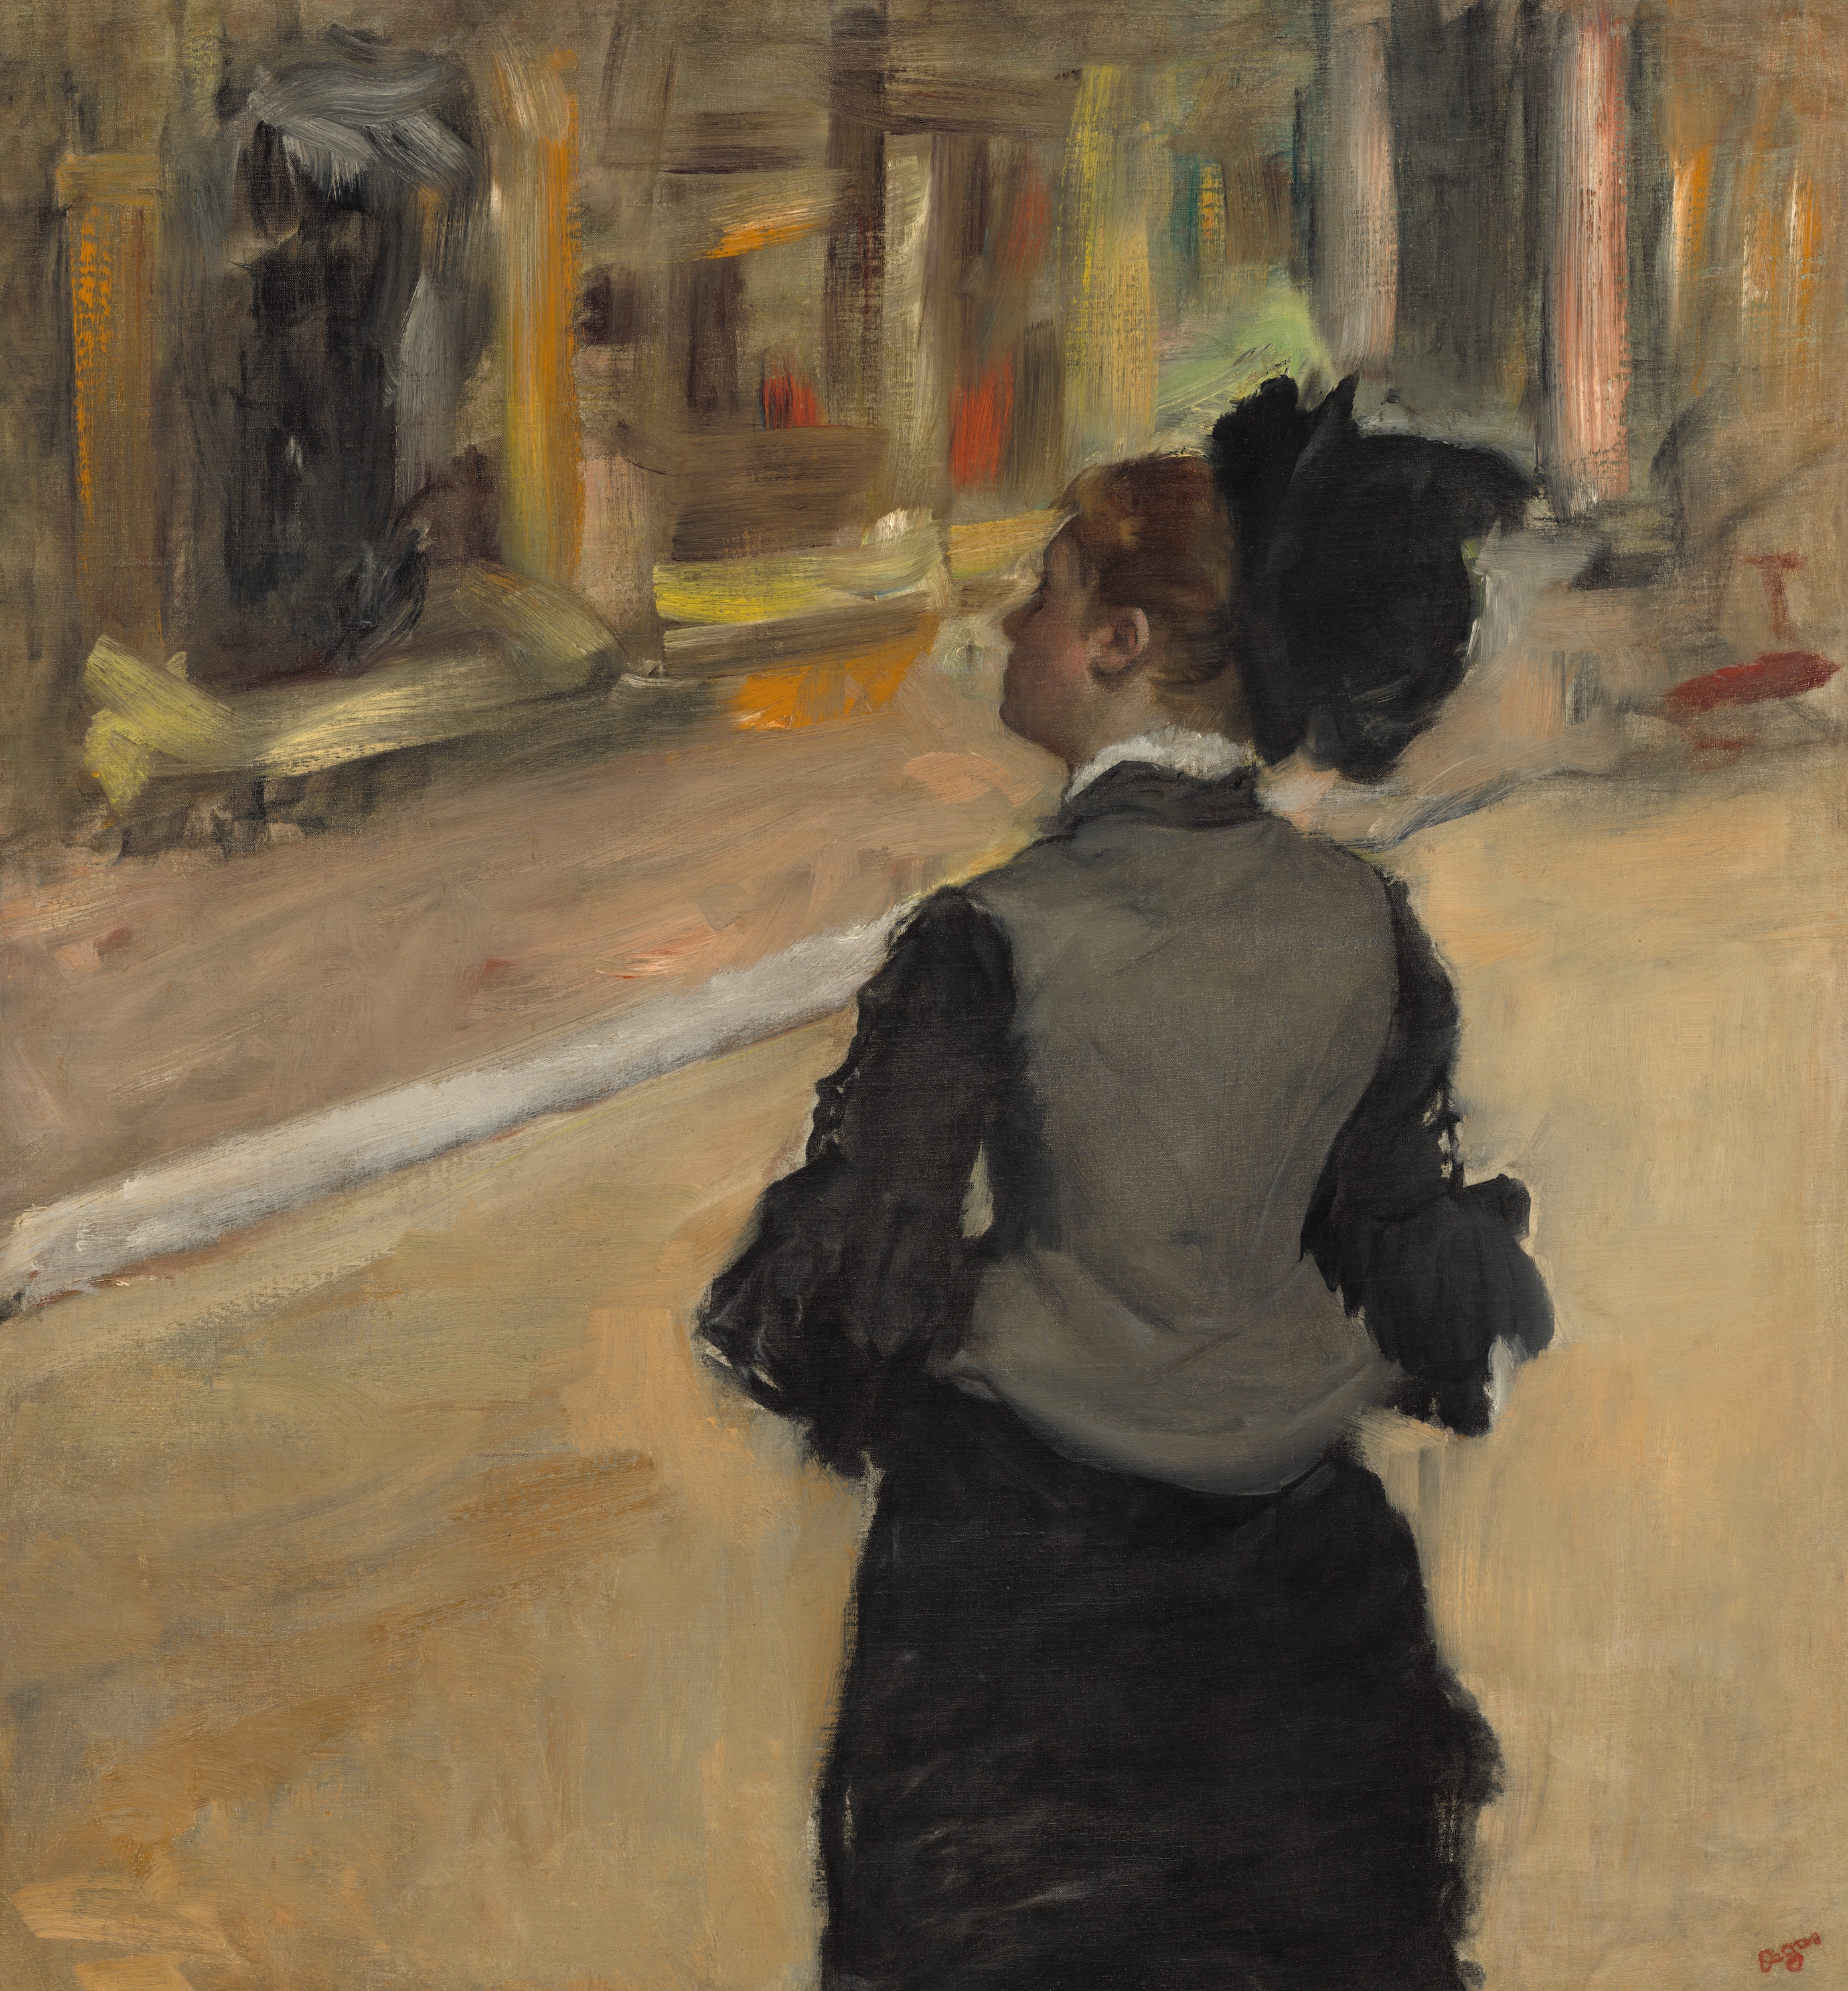 Kobieta widziana od tyłu (Wizyta w muzeum) by Edgar Degas - między ok. 1879r. a ok. 1885r. - 81,3 × 75,6 cm 